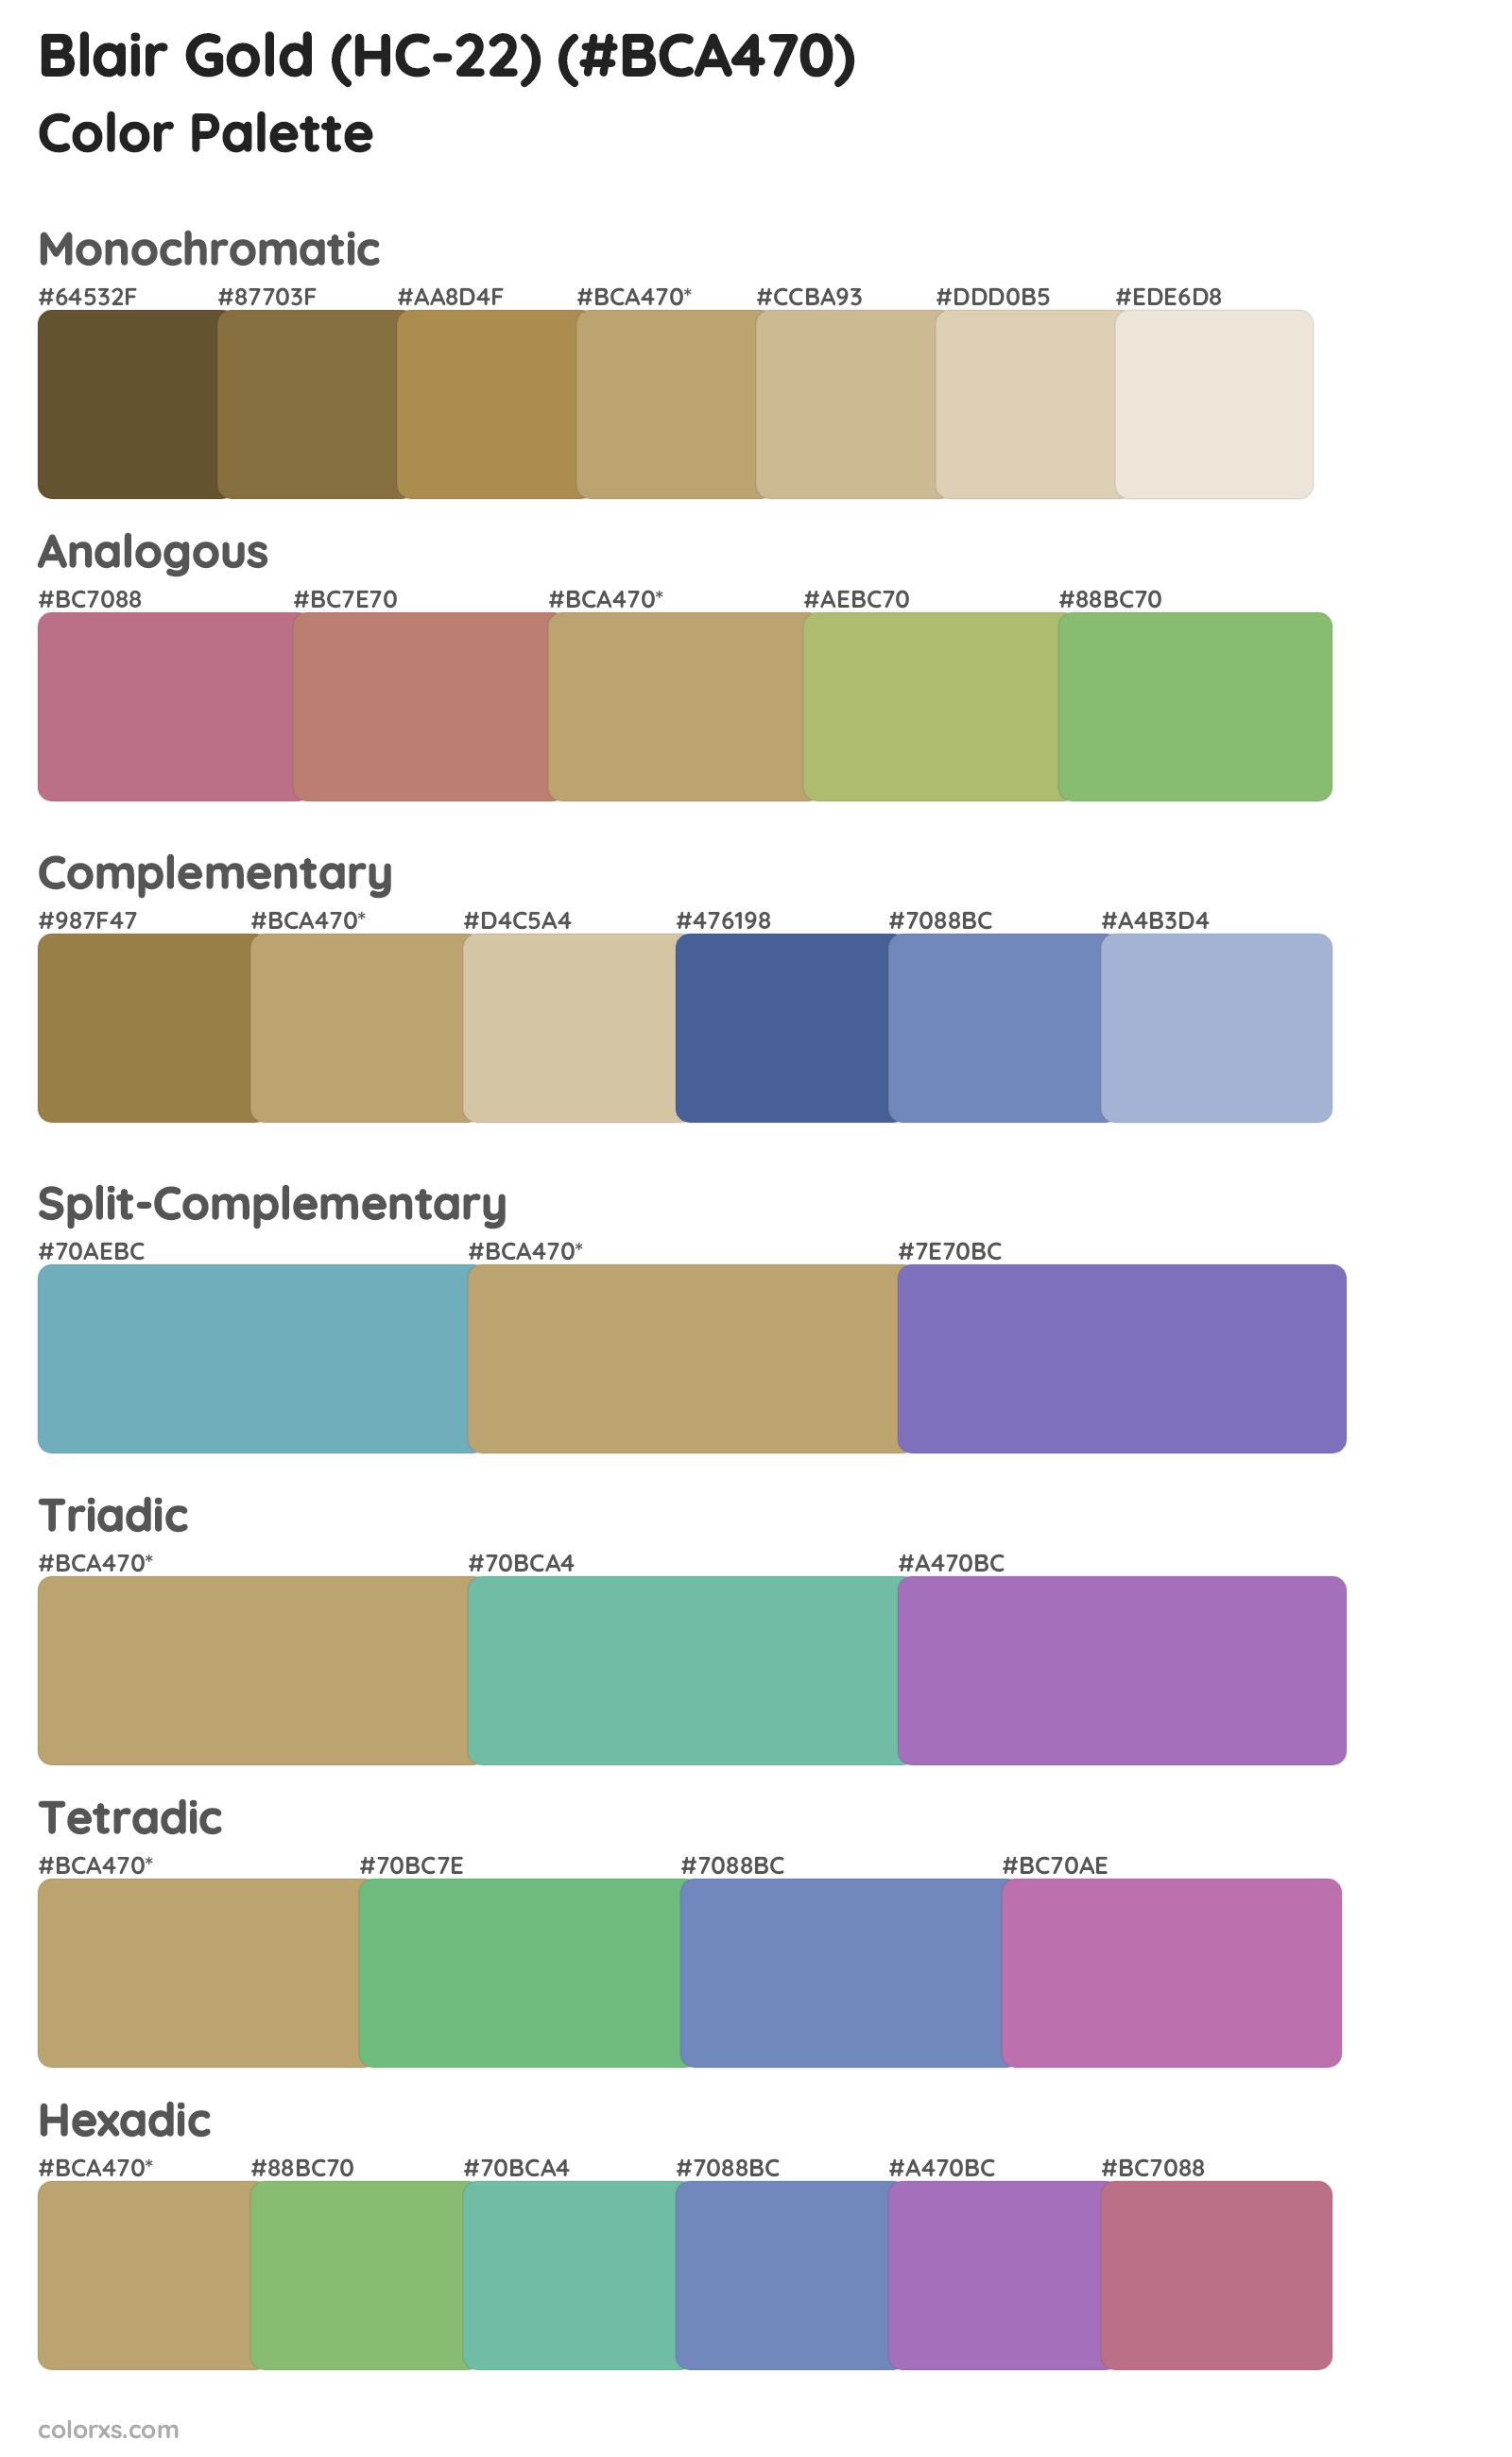 Blair Gold (HC-22) Color Scheme Palettes